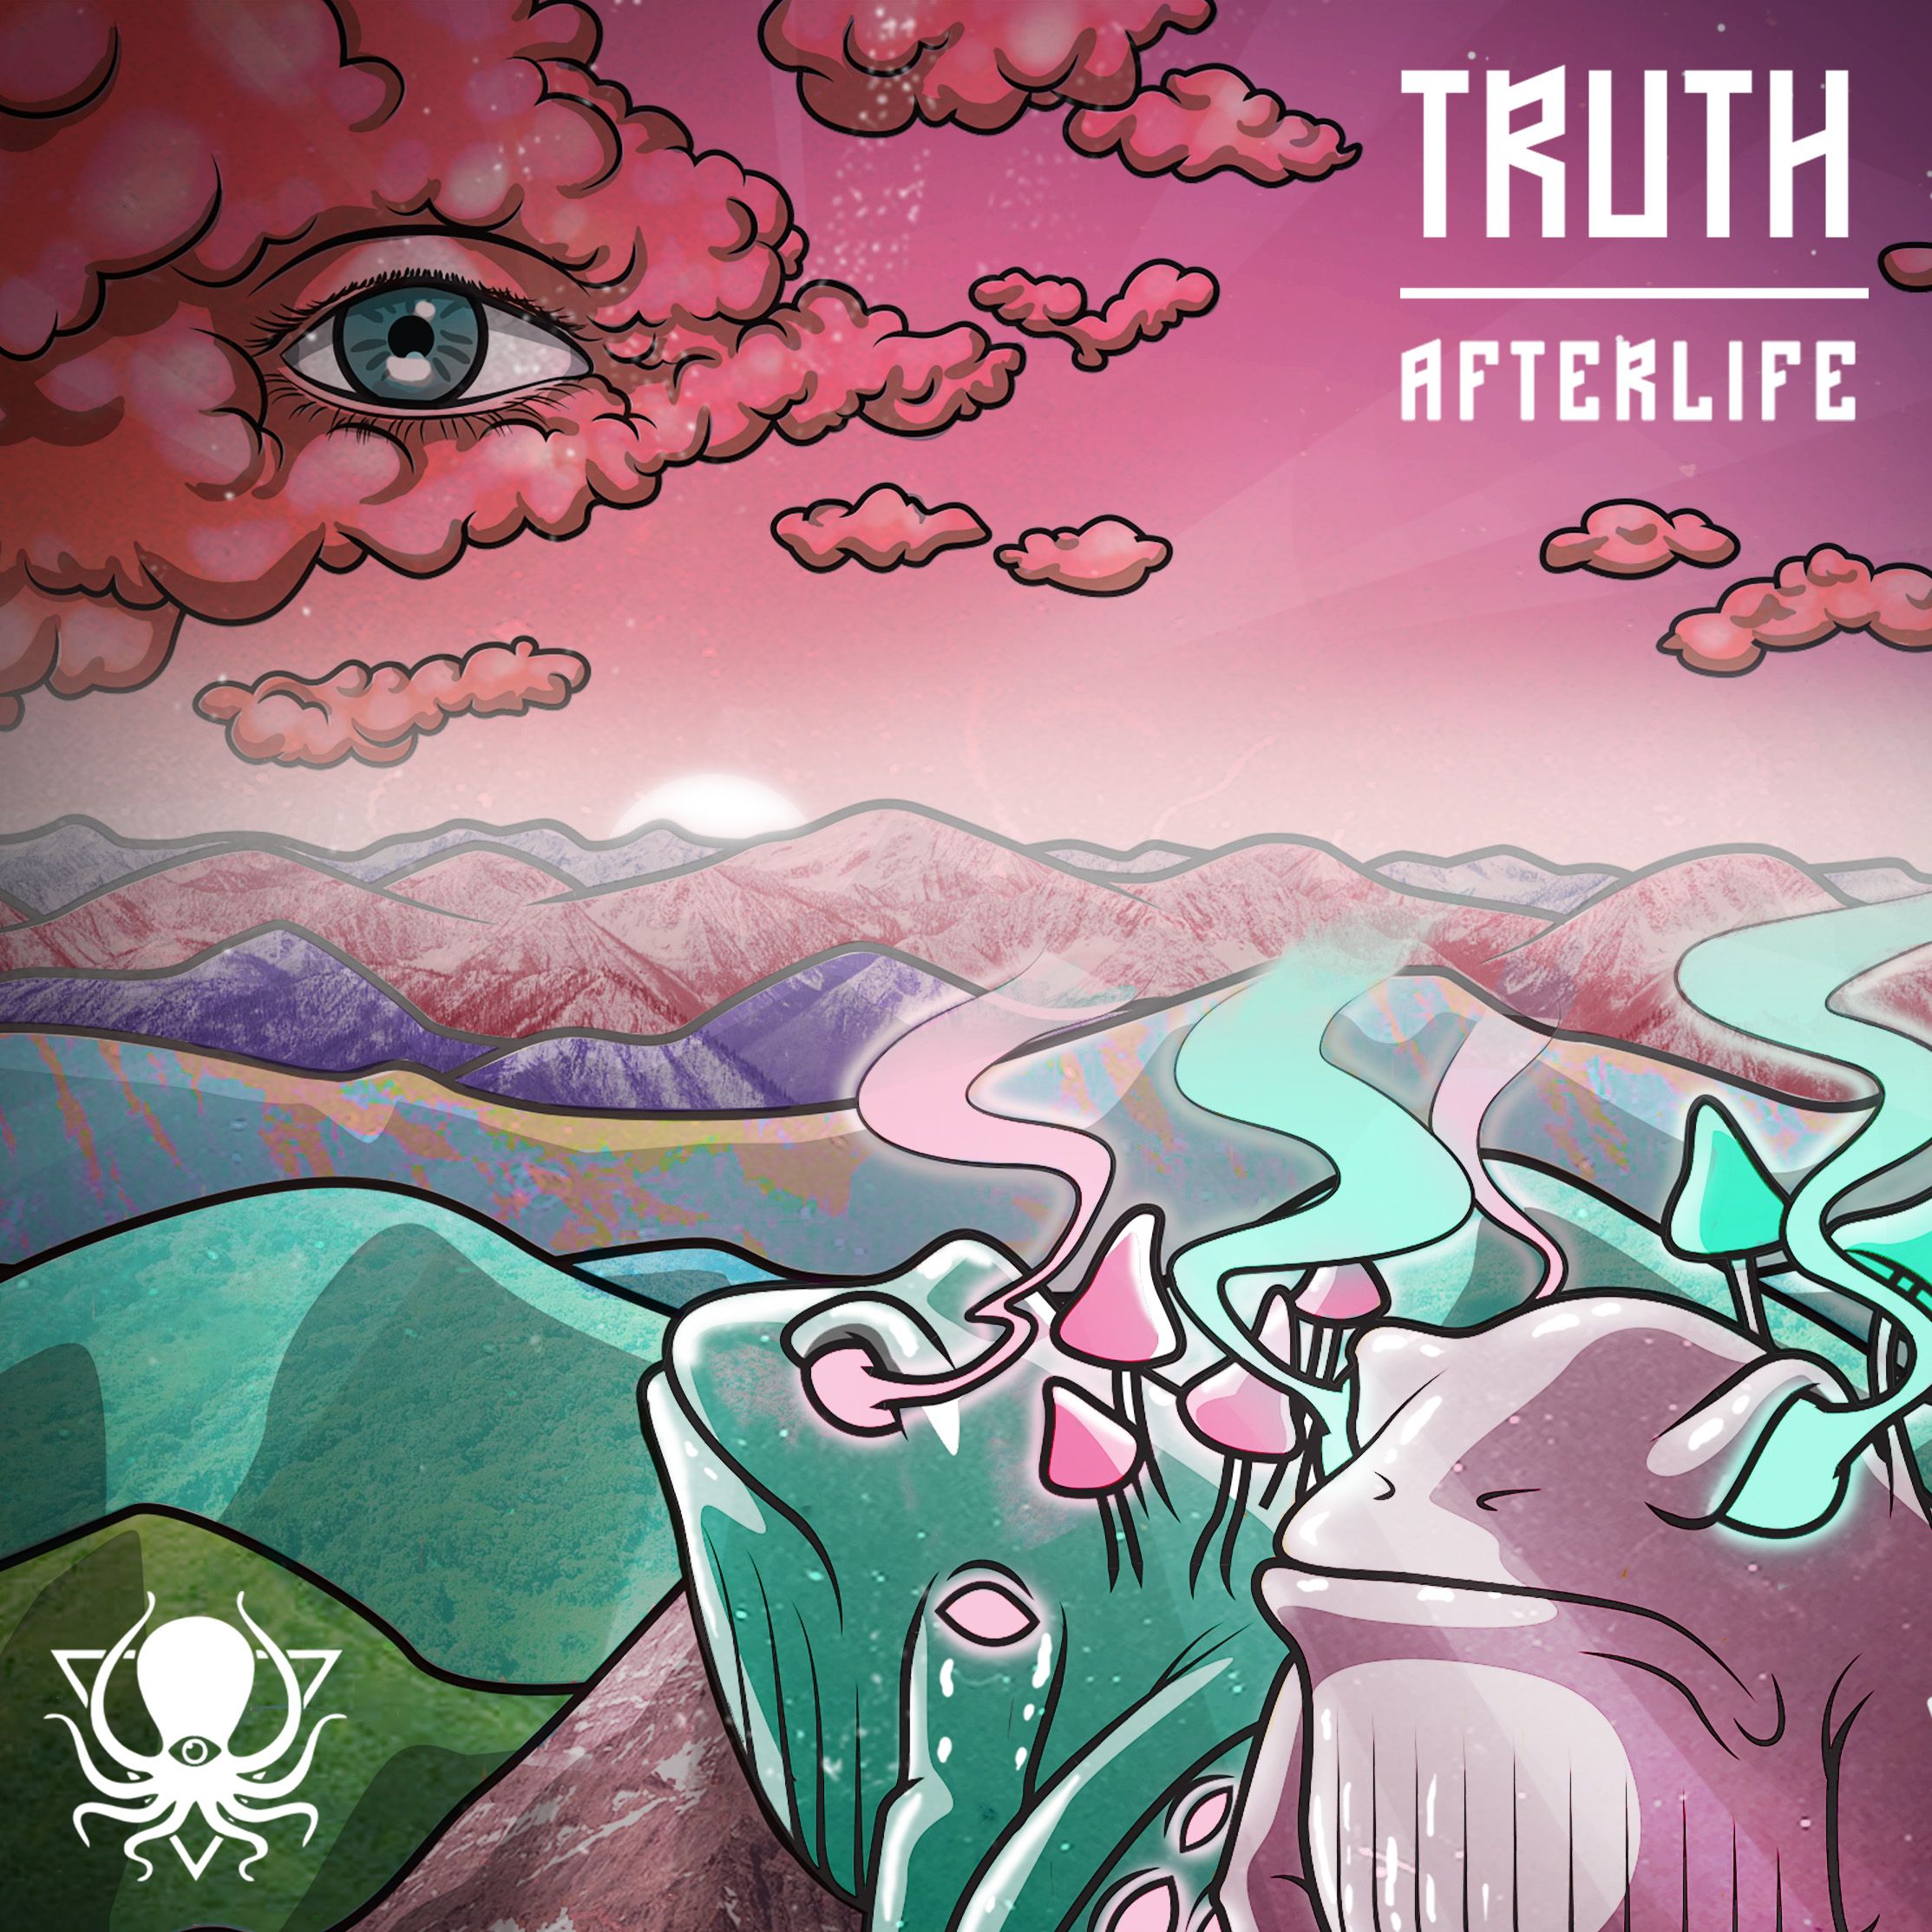 ดาวน์โหลด Truth - Afterlife (DDD095)